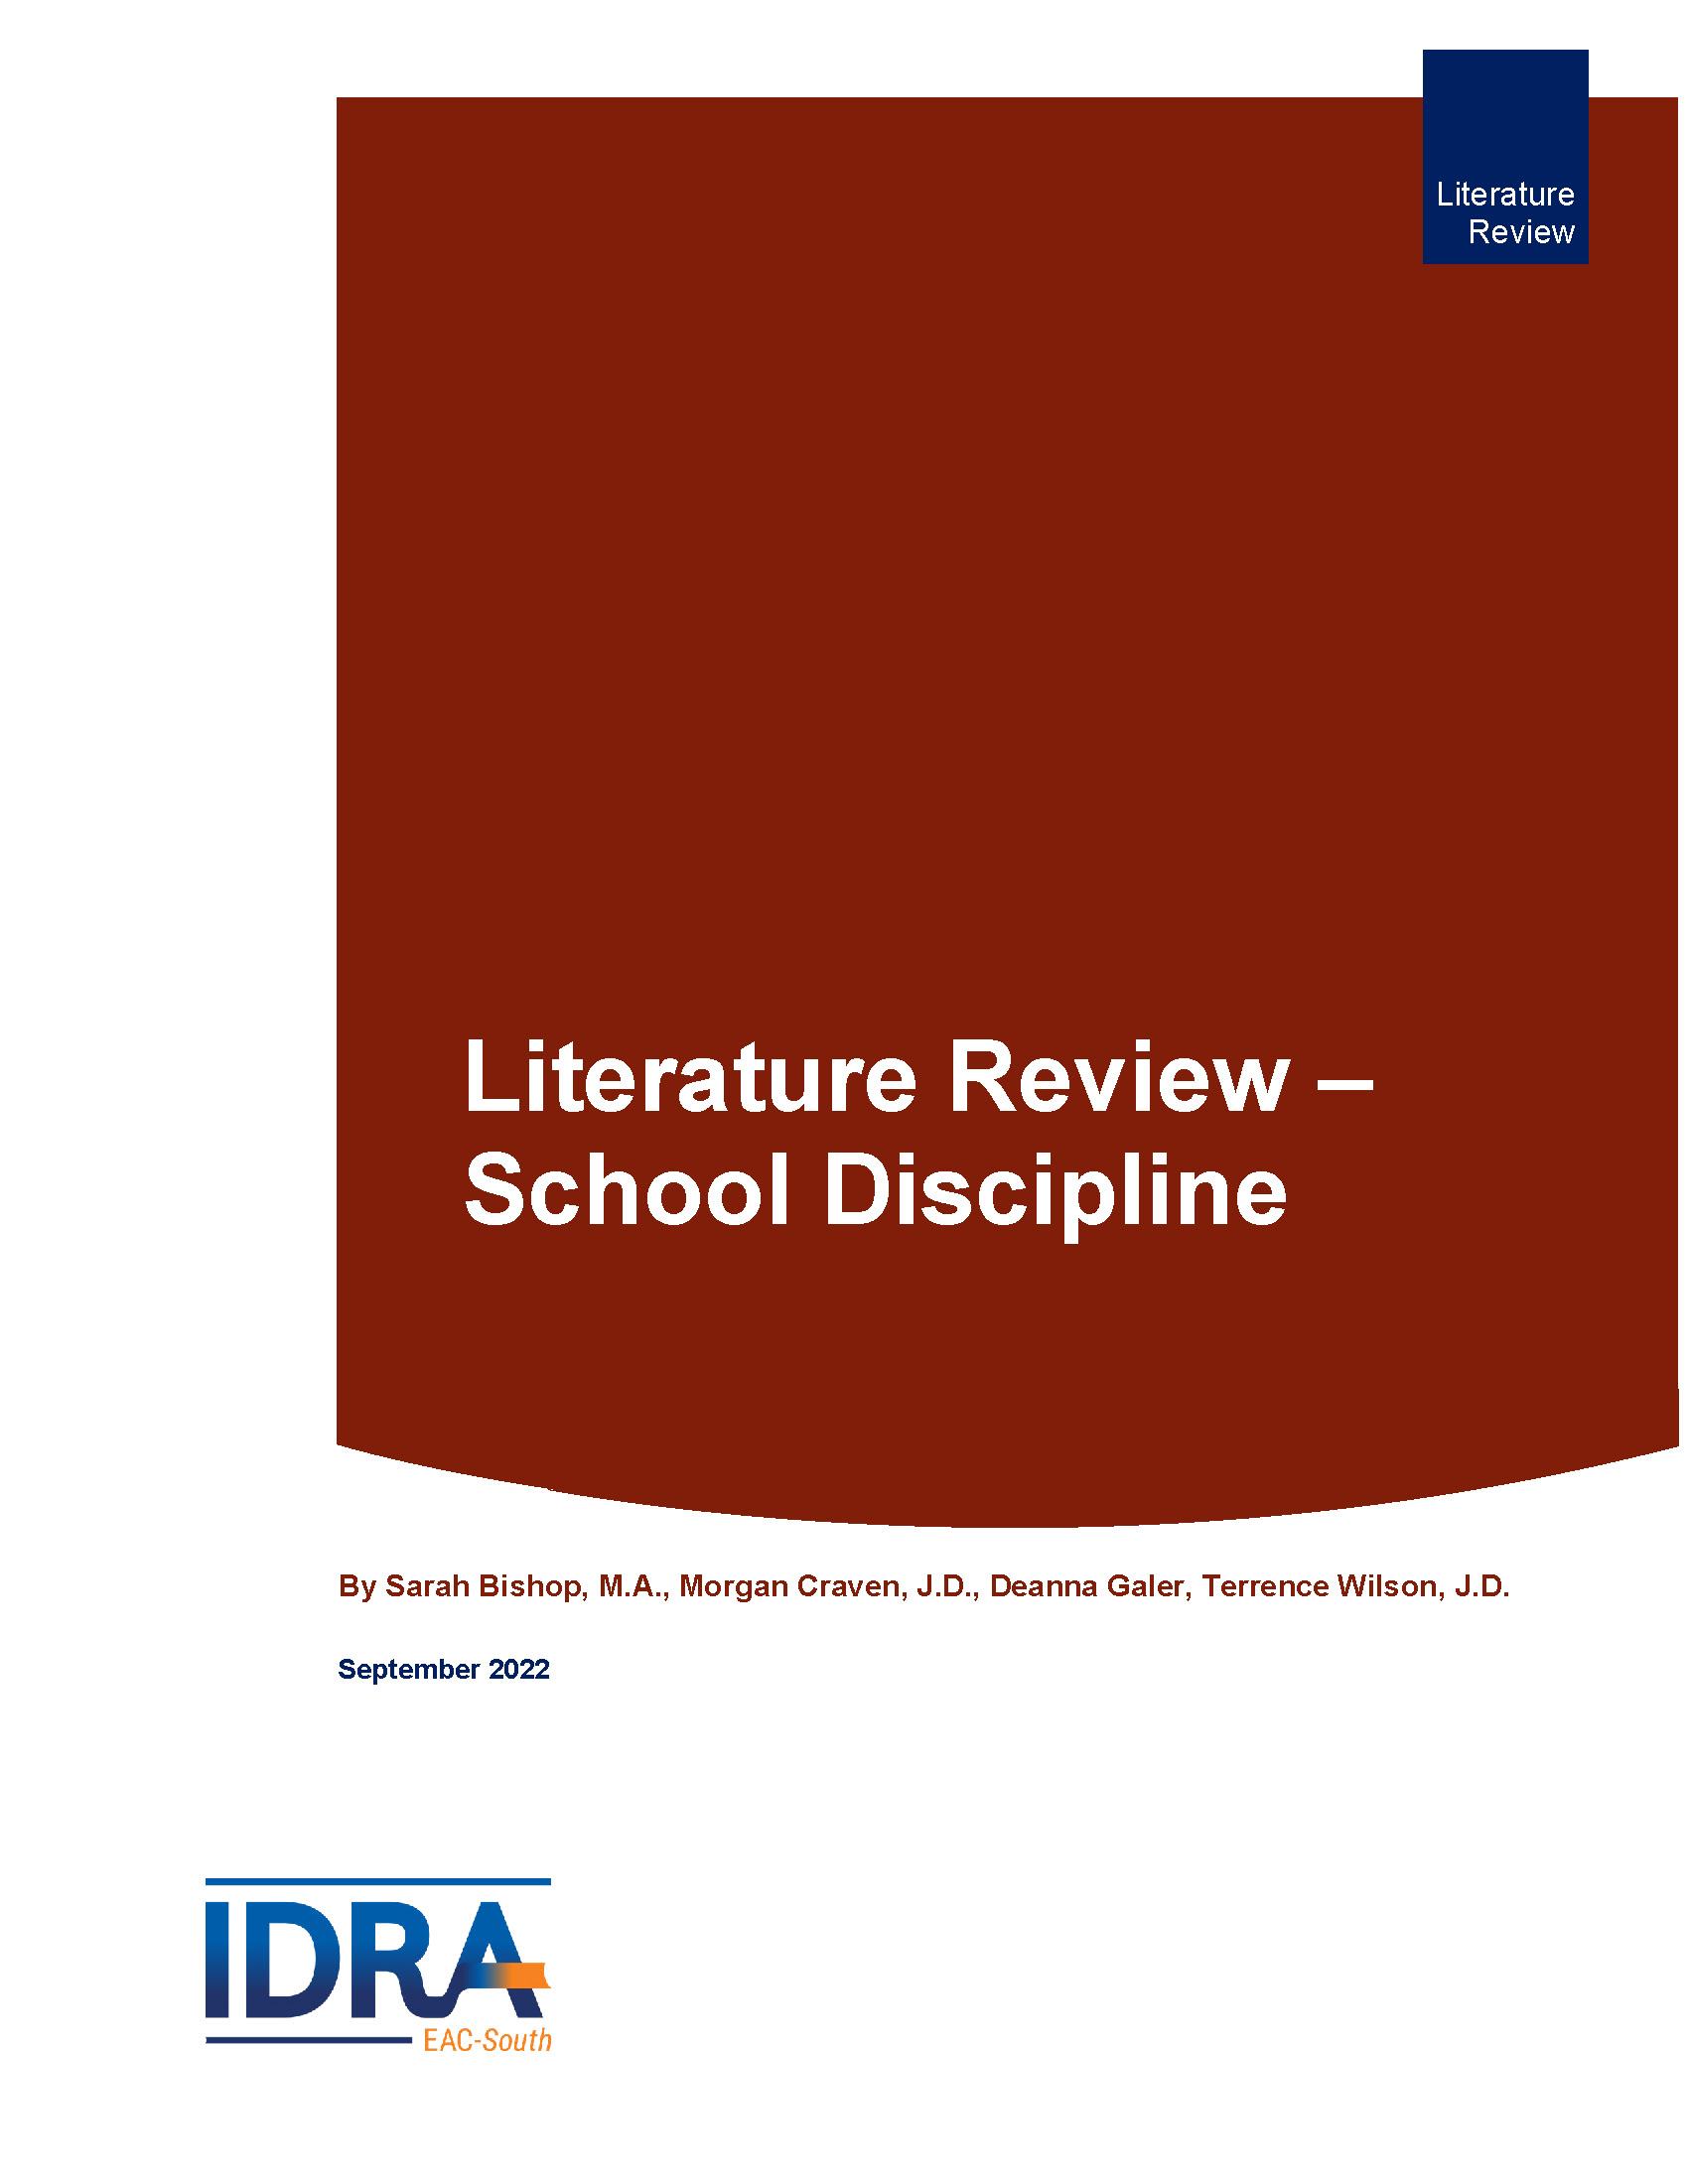 academic discipline literature review